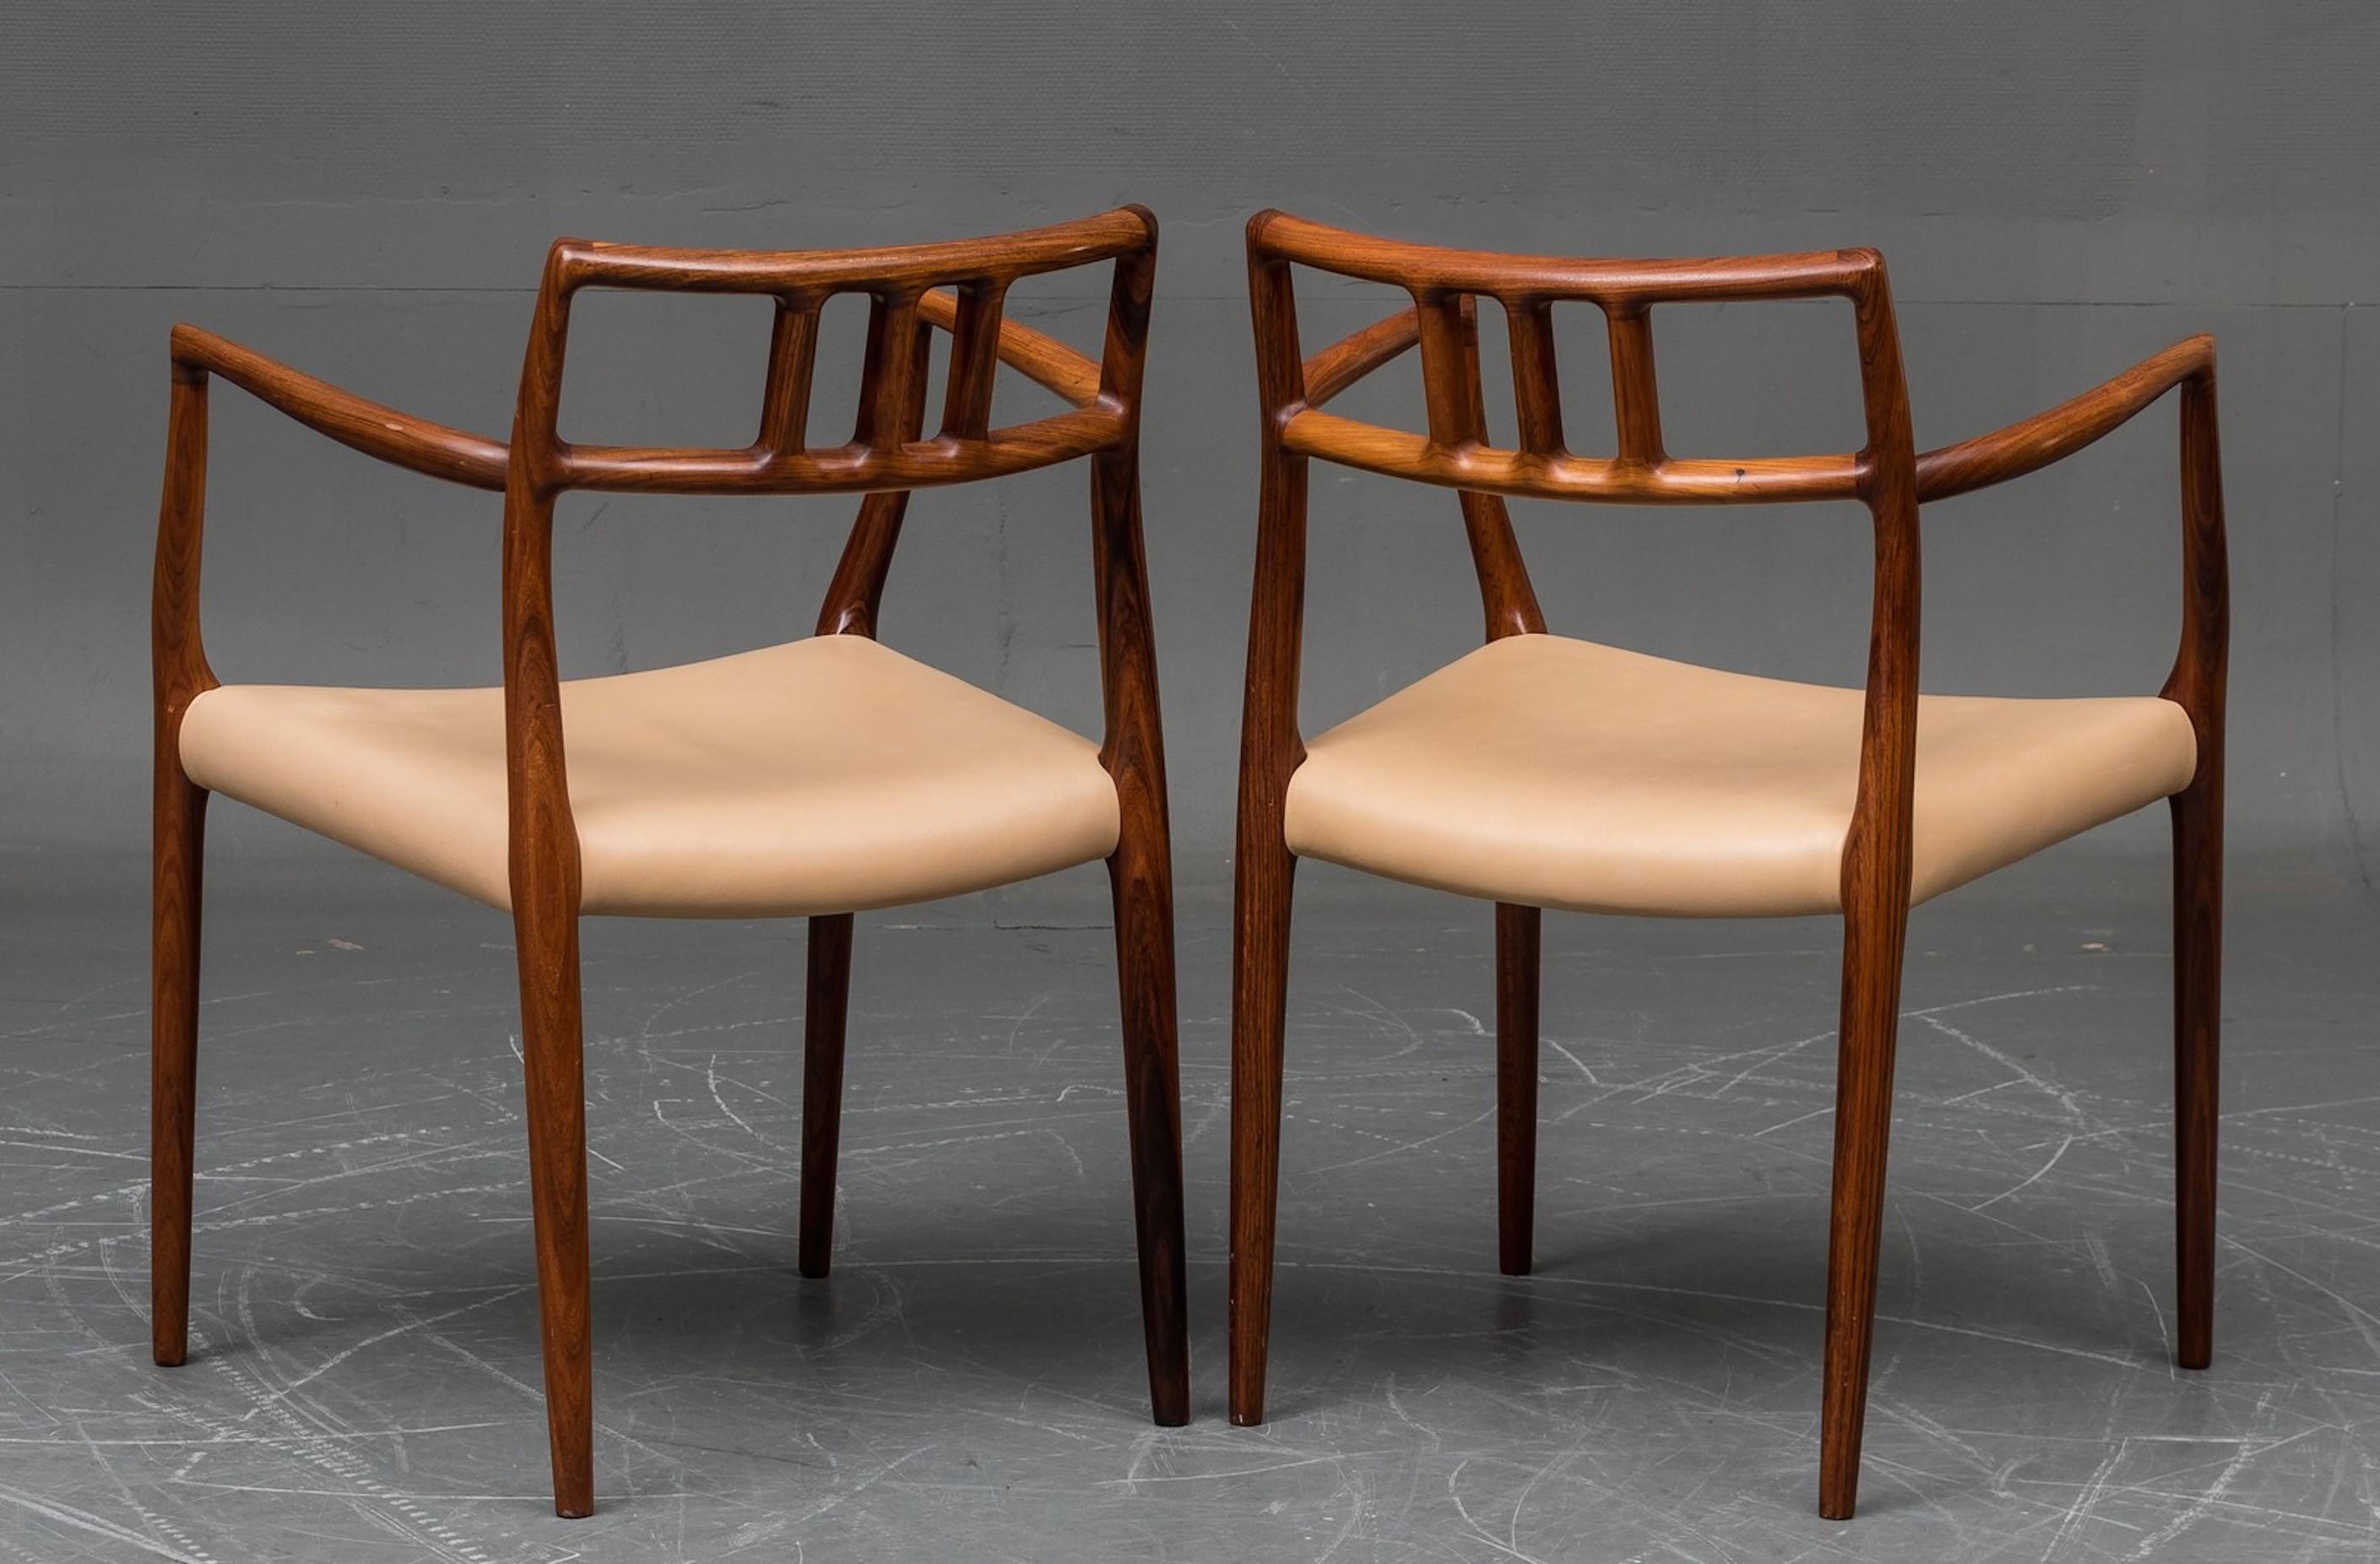 Une paire de chaises longues en bois de rose conçues par N.O. Moller et édité par JL Mobelfabrick dans les années 1960. Cadre en bois de rose massif et rembourrage en cuir clair. Excellent état.